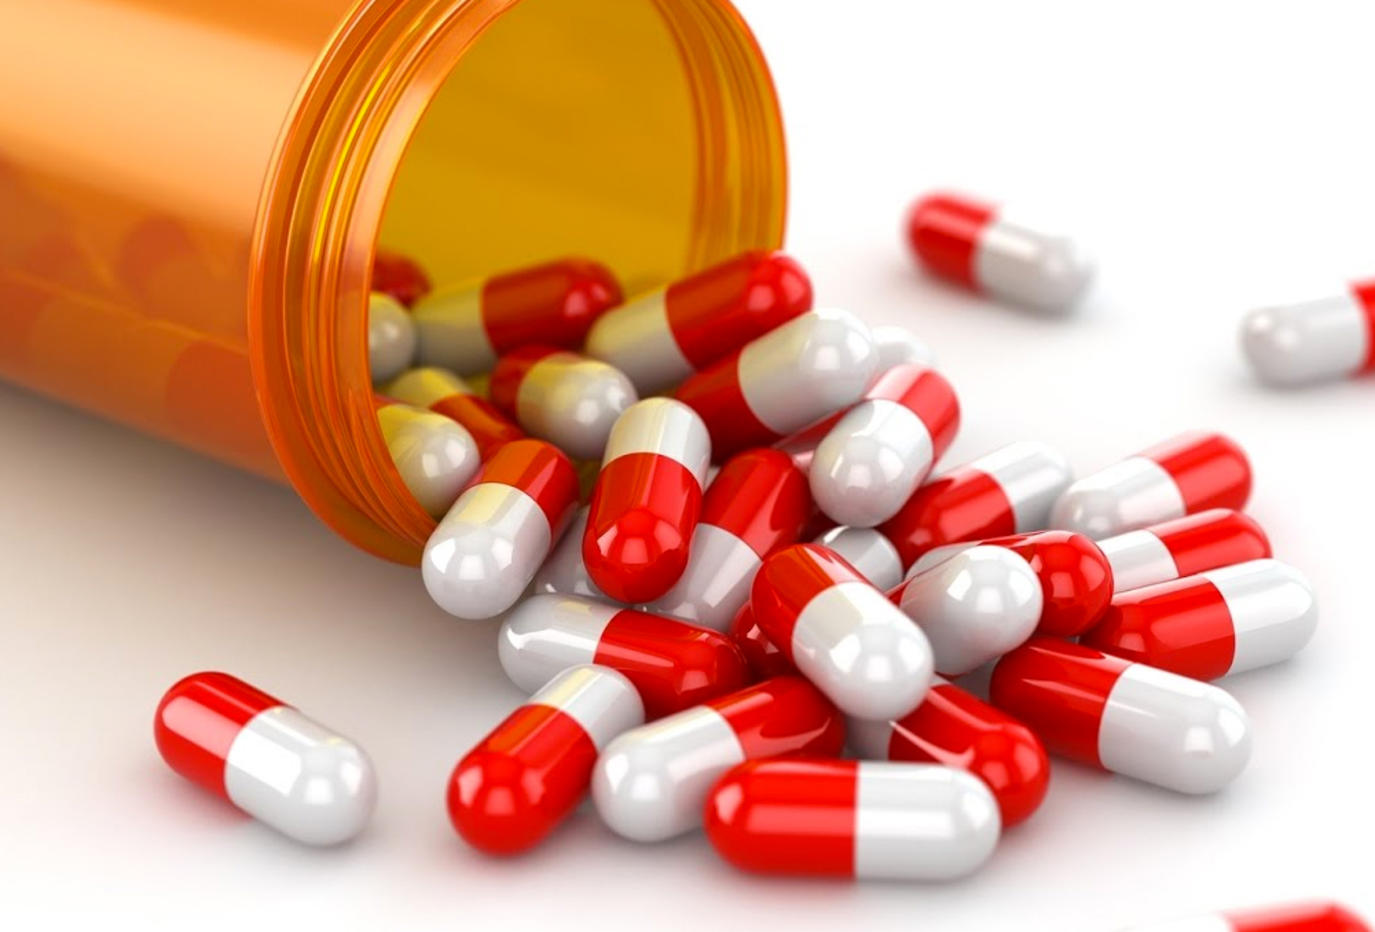 المضادات الحيوية تهدد بالوفاة.. وشعبة الأدوية تدرس منع صرفها إلا بـ«روشتة»